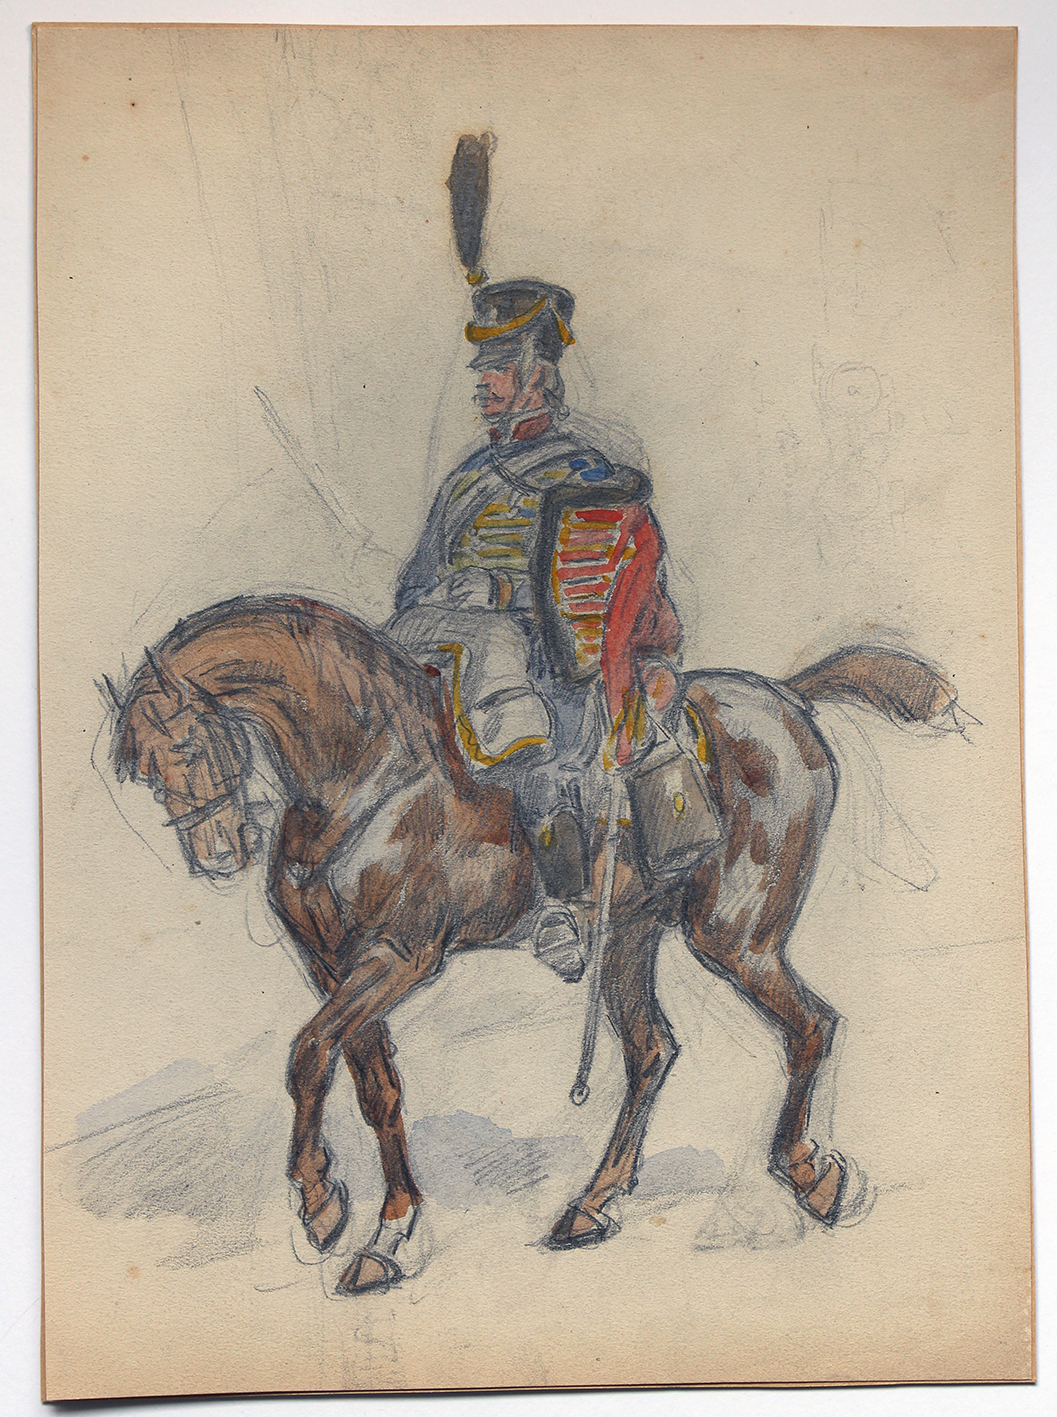 Dessin crayon rehaussé couleurs - Hussards - 1er Empire - Sans date.